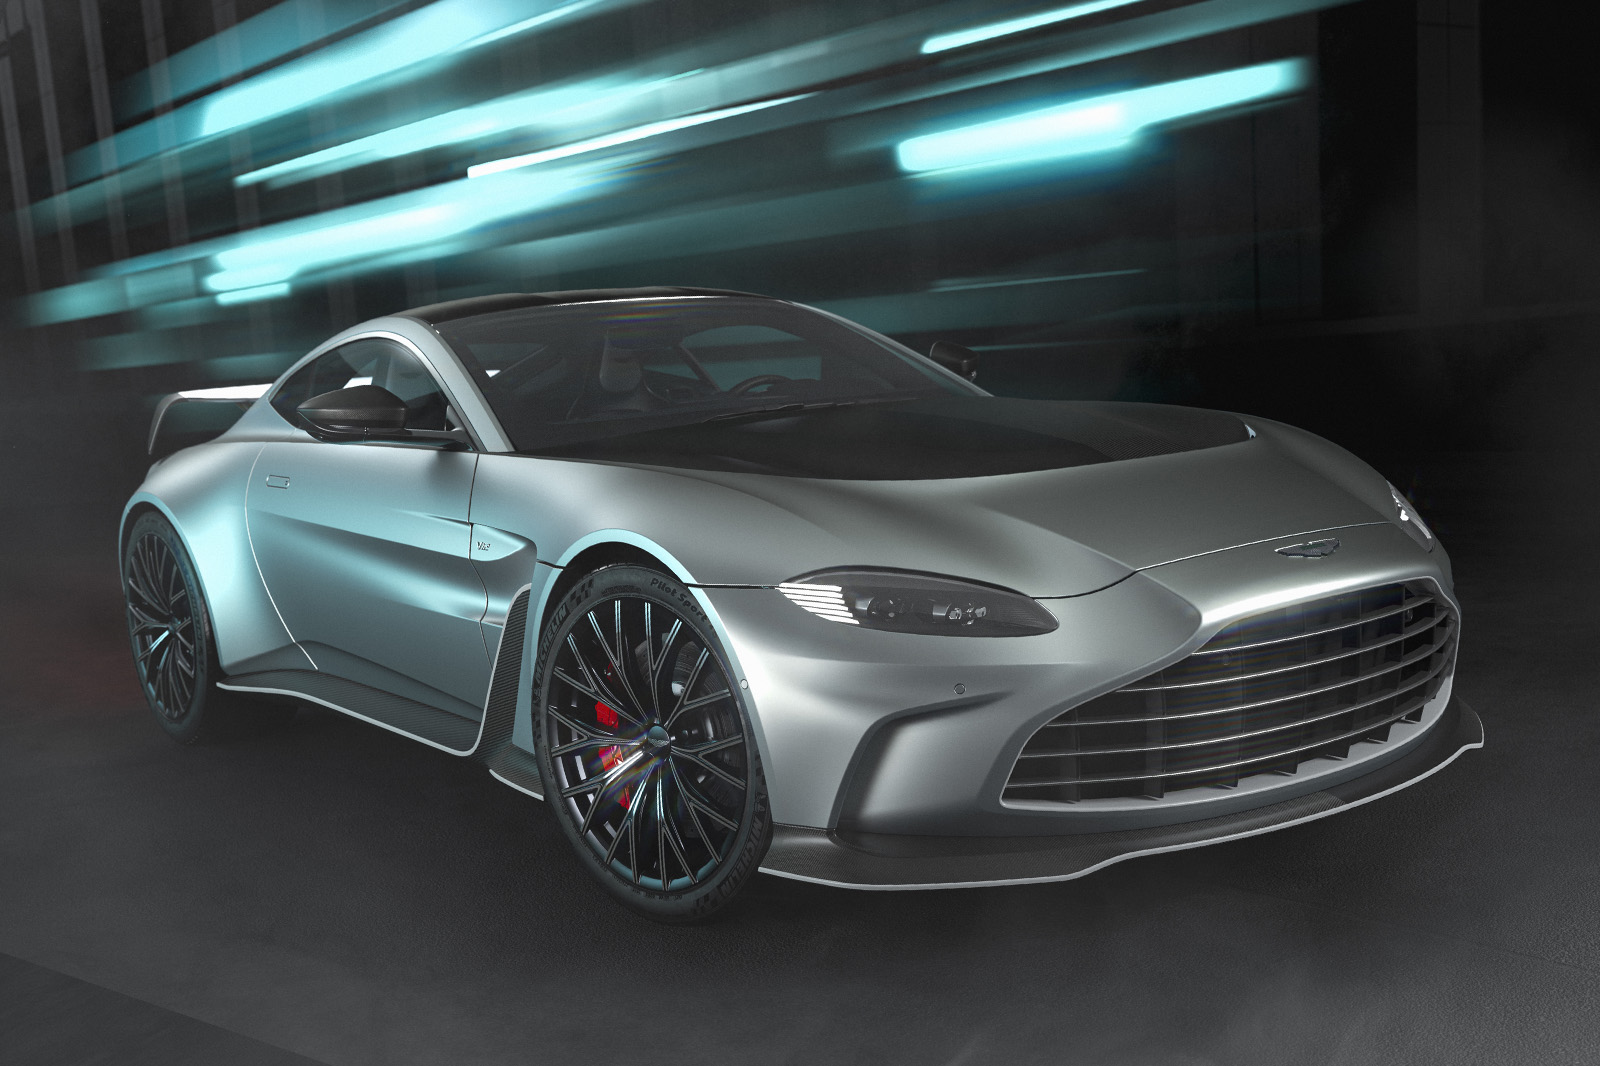 Aston Martin V12 Vantage baru menghasilkan 690 hp dan fokus pada trek balap